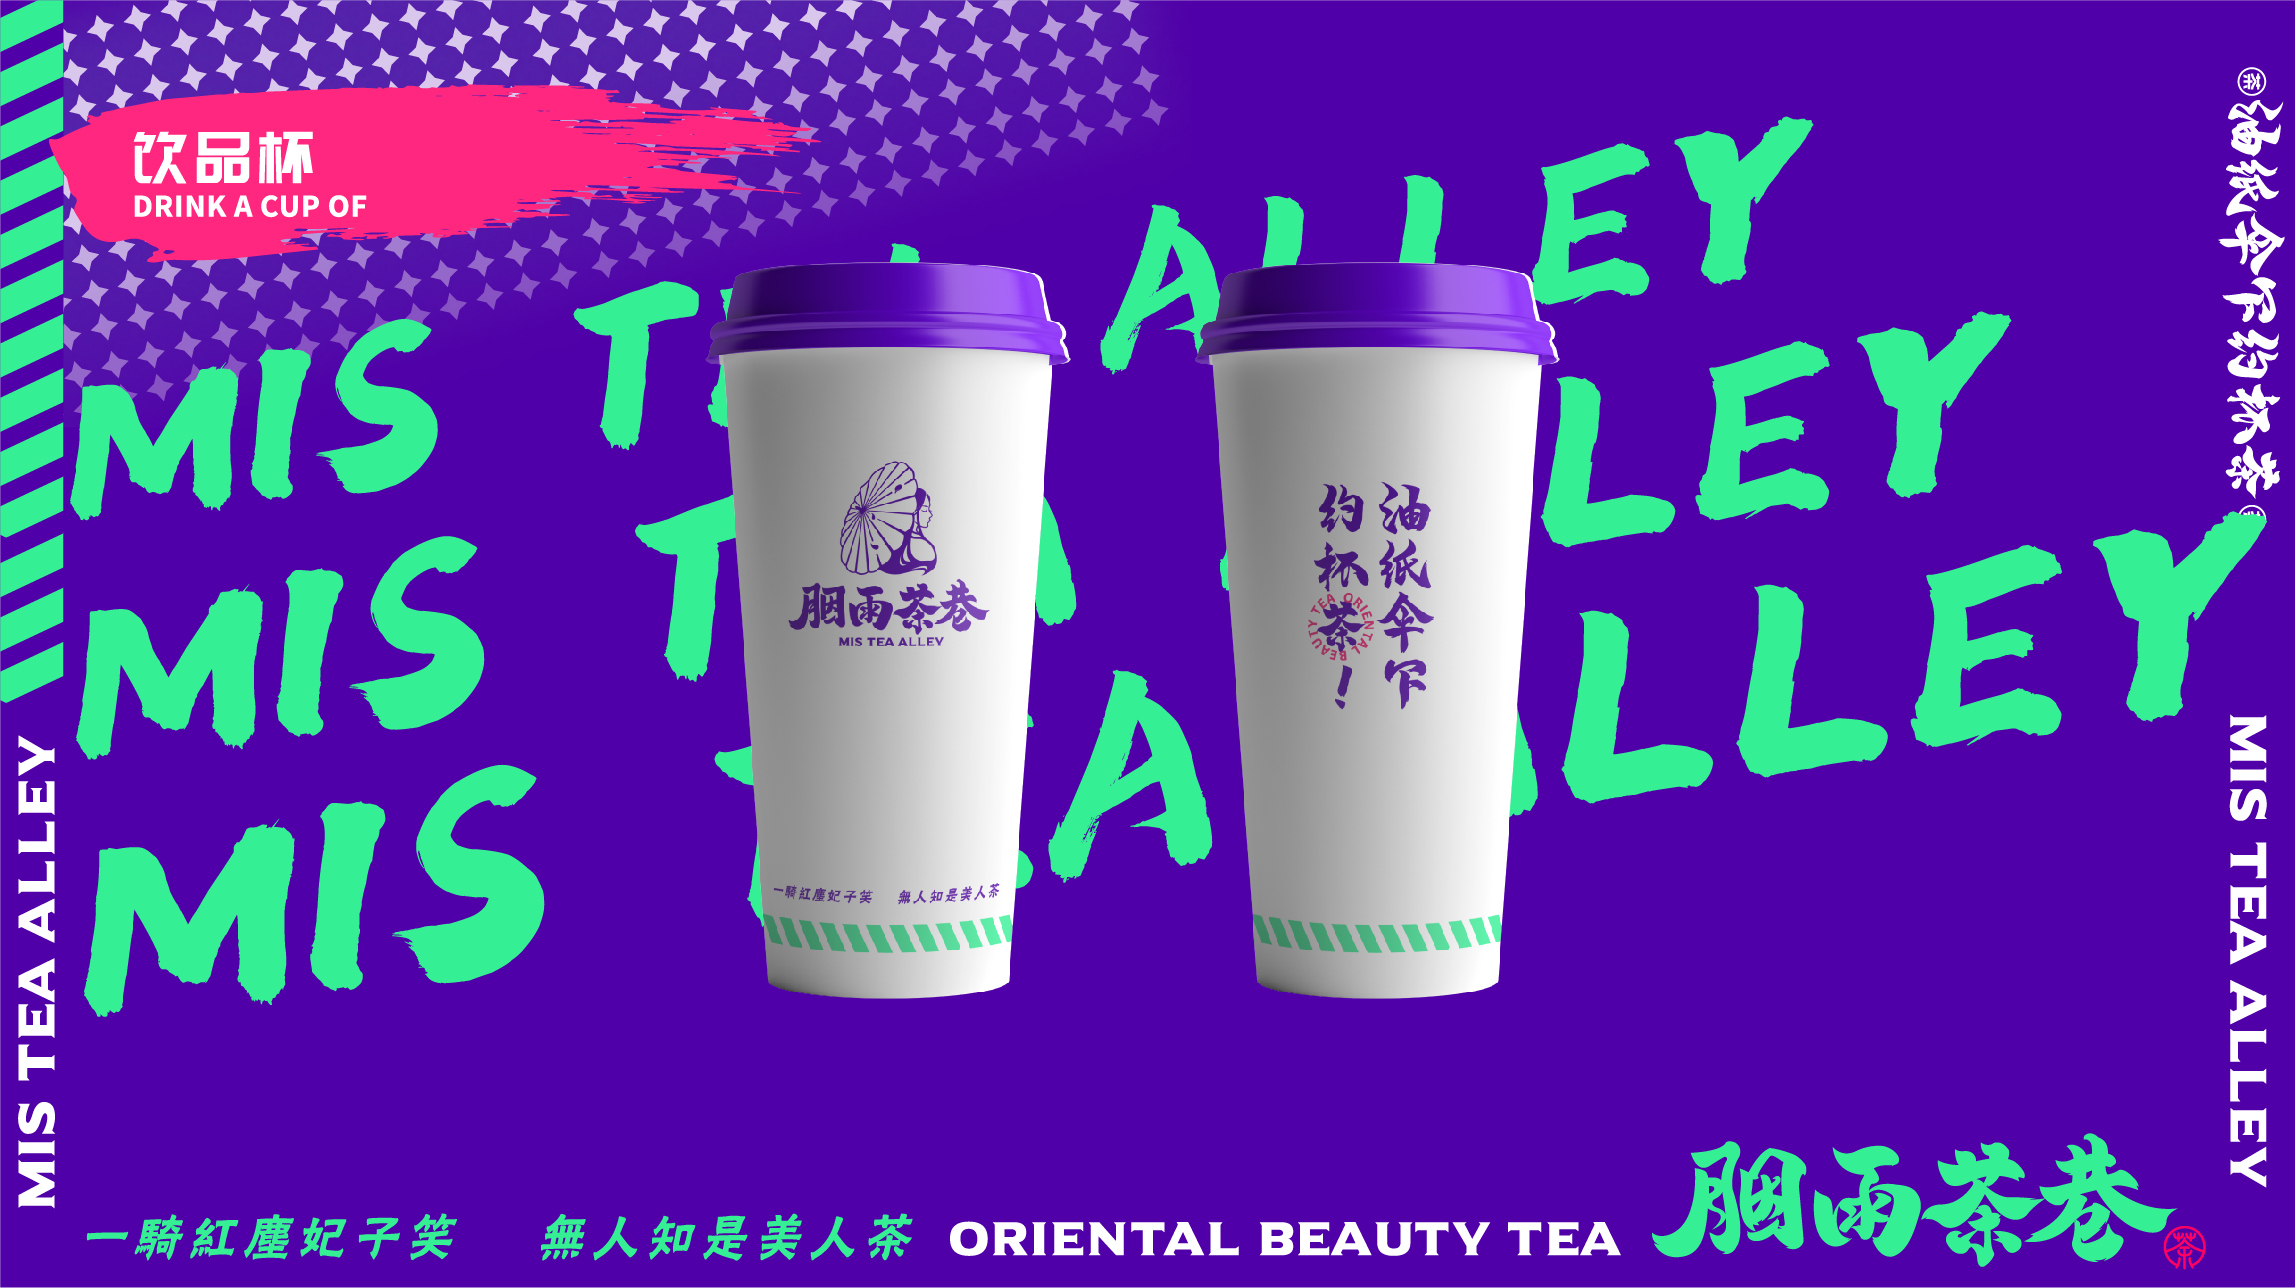 茶饮品牌胭雨茶巷饮品杯设计